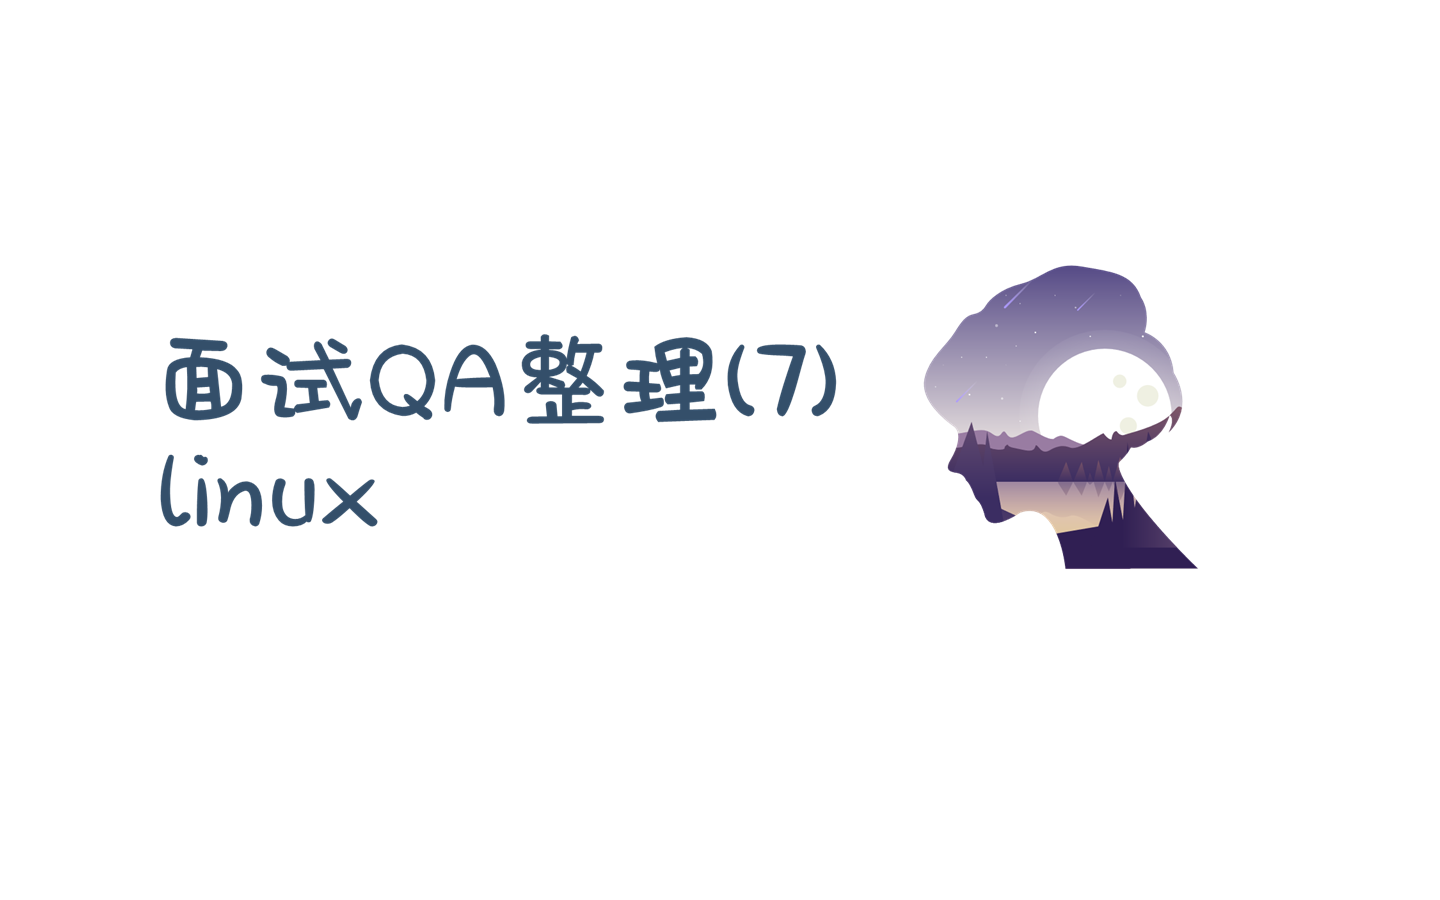 面试QA整理(7)——linux